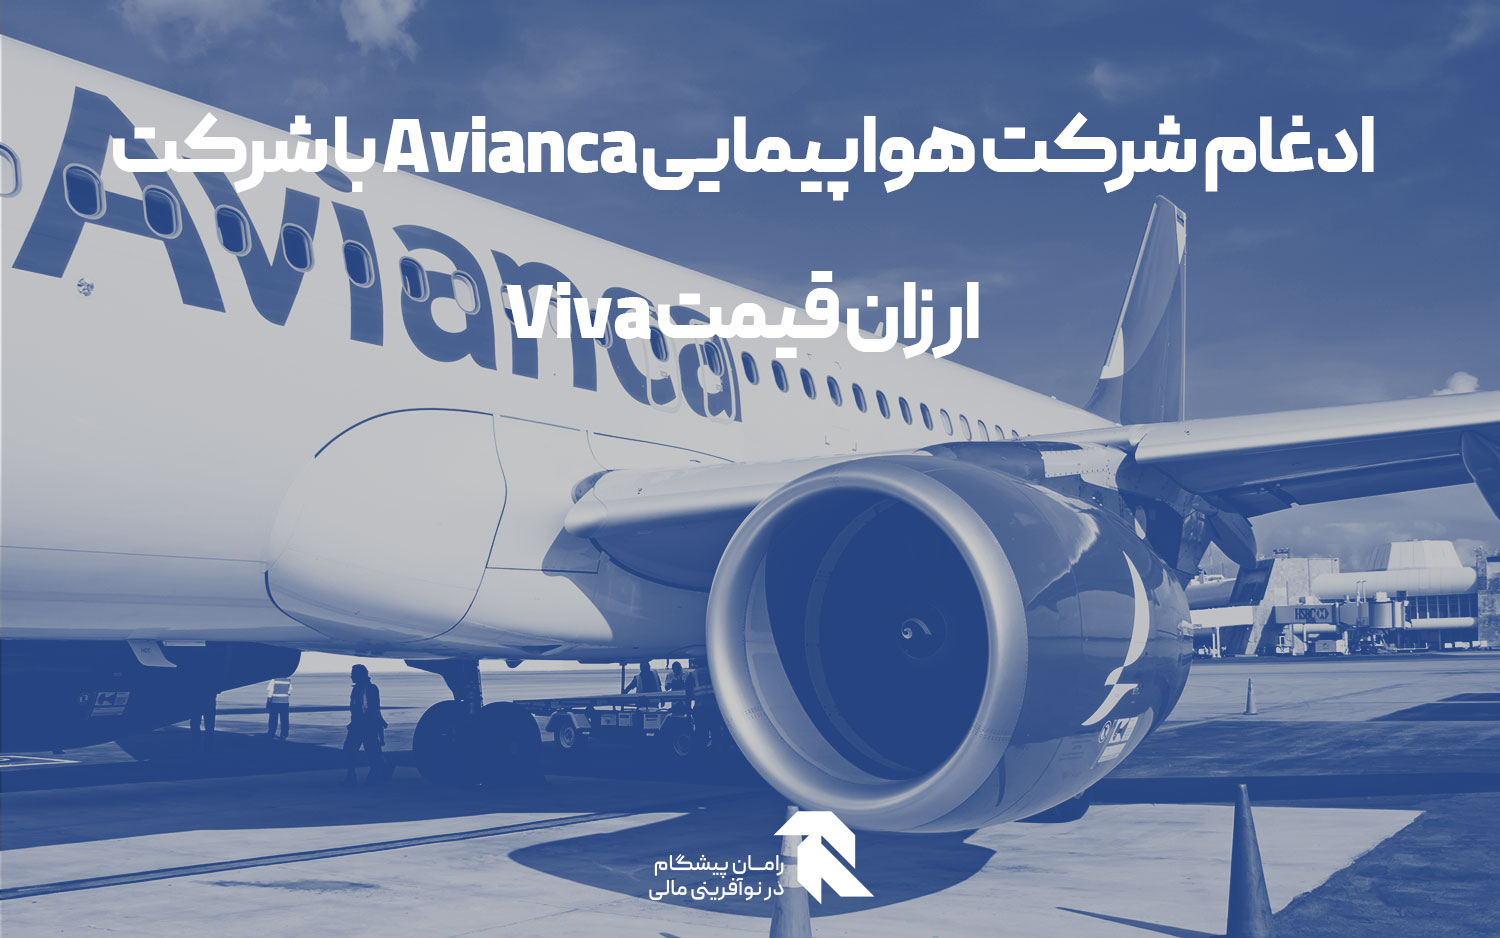 ادغام شرکت هواپیمایی Avianca با شرکت ارزان قیمت Viva